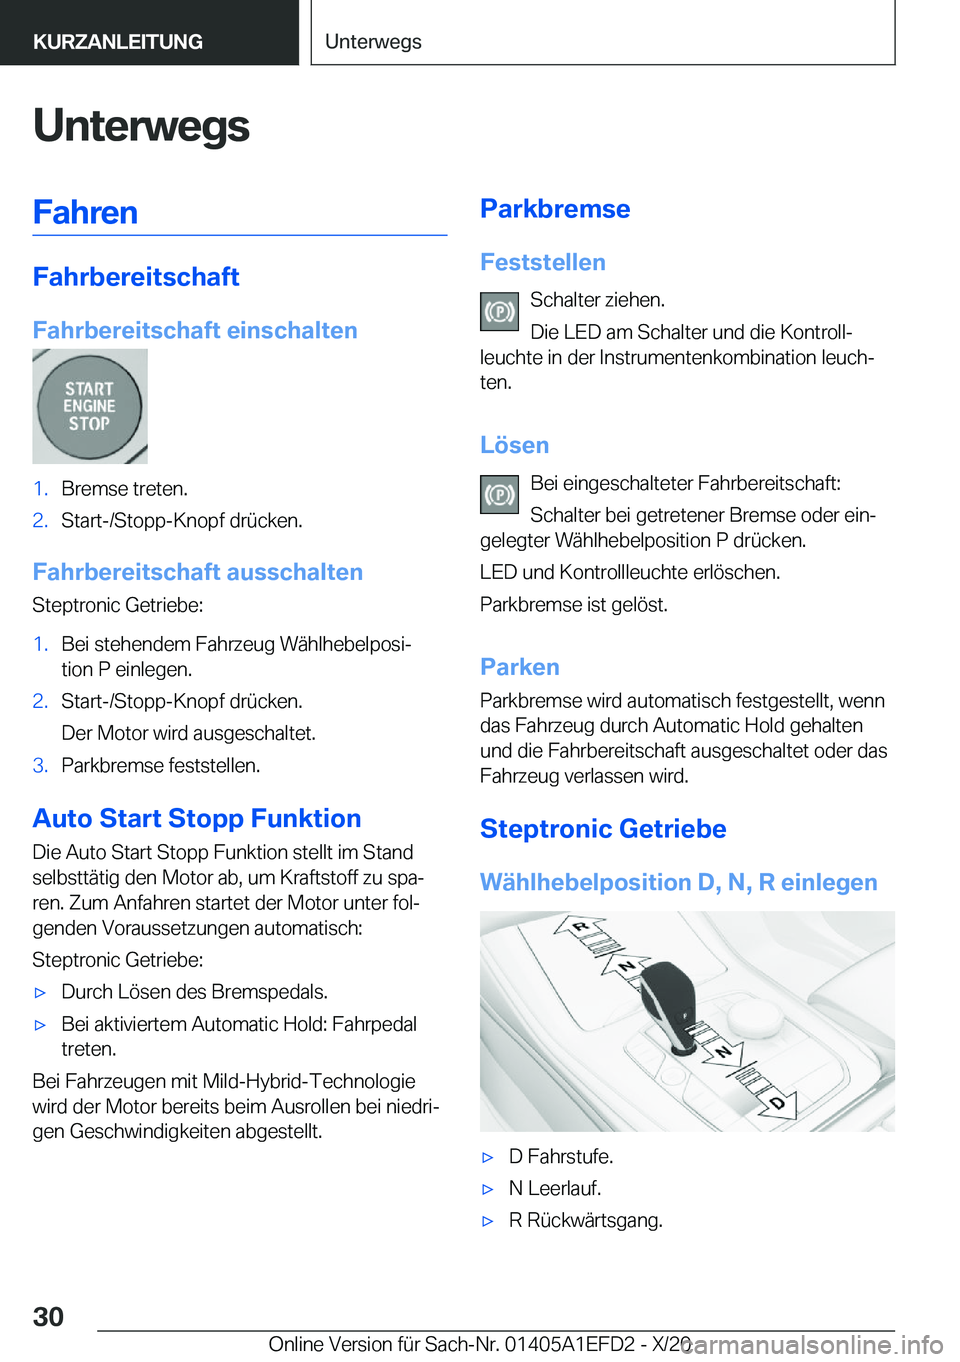 BMW X7 2021  Betriebsanleitungen (in German) �U�n�t�e�r�w�e�g�s�F�a�h�r�e�n
�F�a�h�r�b�e�r�e�i�t�s�c�h�a�f�t
�F�a�h�r�b�e�r�e�i�t�s�c�h�a�f�t��e�i�n�s�c�h�a�l�t�e�n
�1�.�B�r�e�m�s�e��t�r�e�t�e�n�.�2�.�S�t�a�r�t�-�/�S�t�o�p�p�-�K�n�o�p�f��d�r�